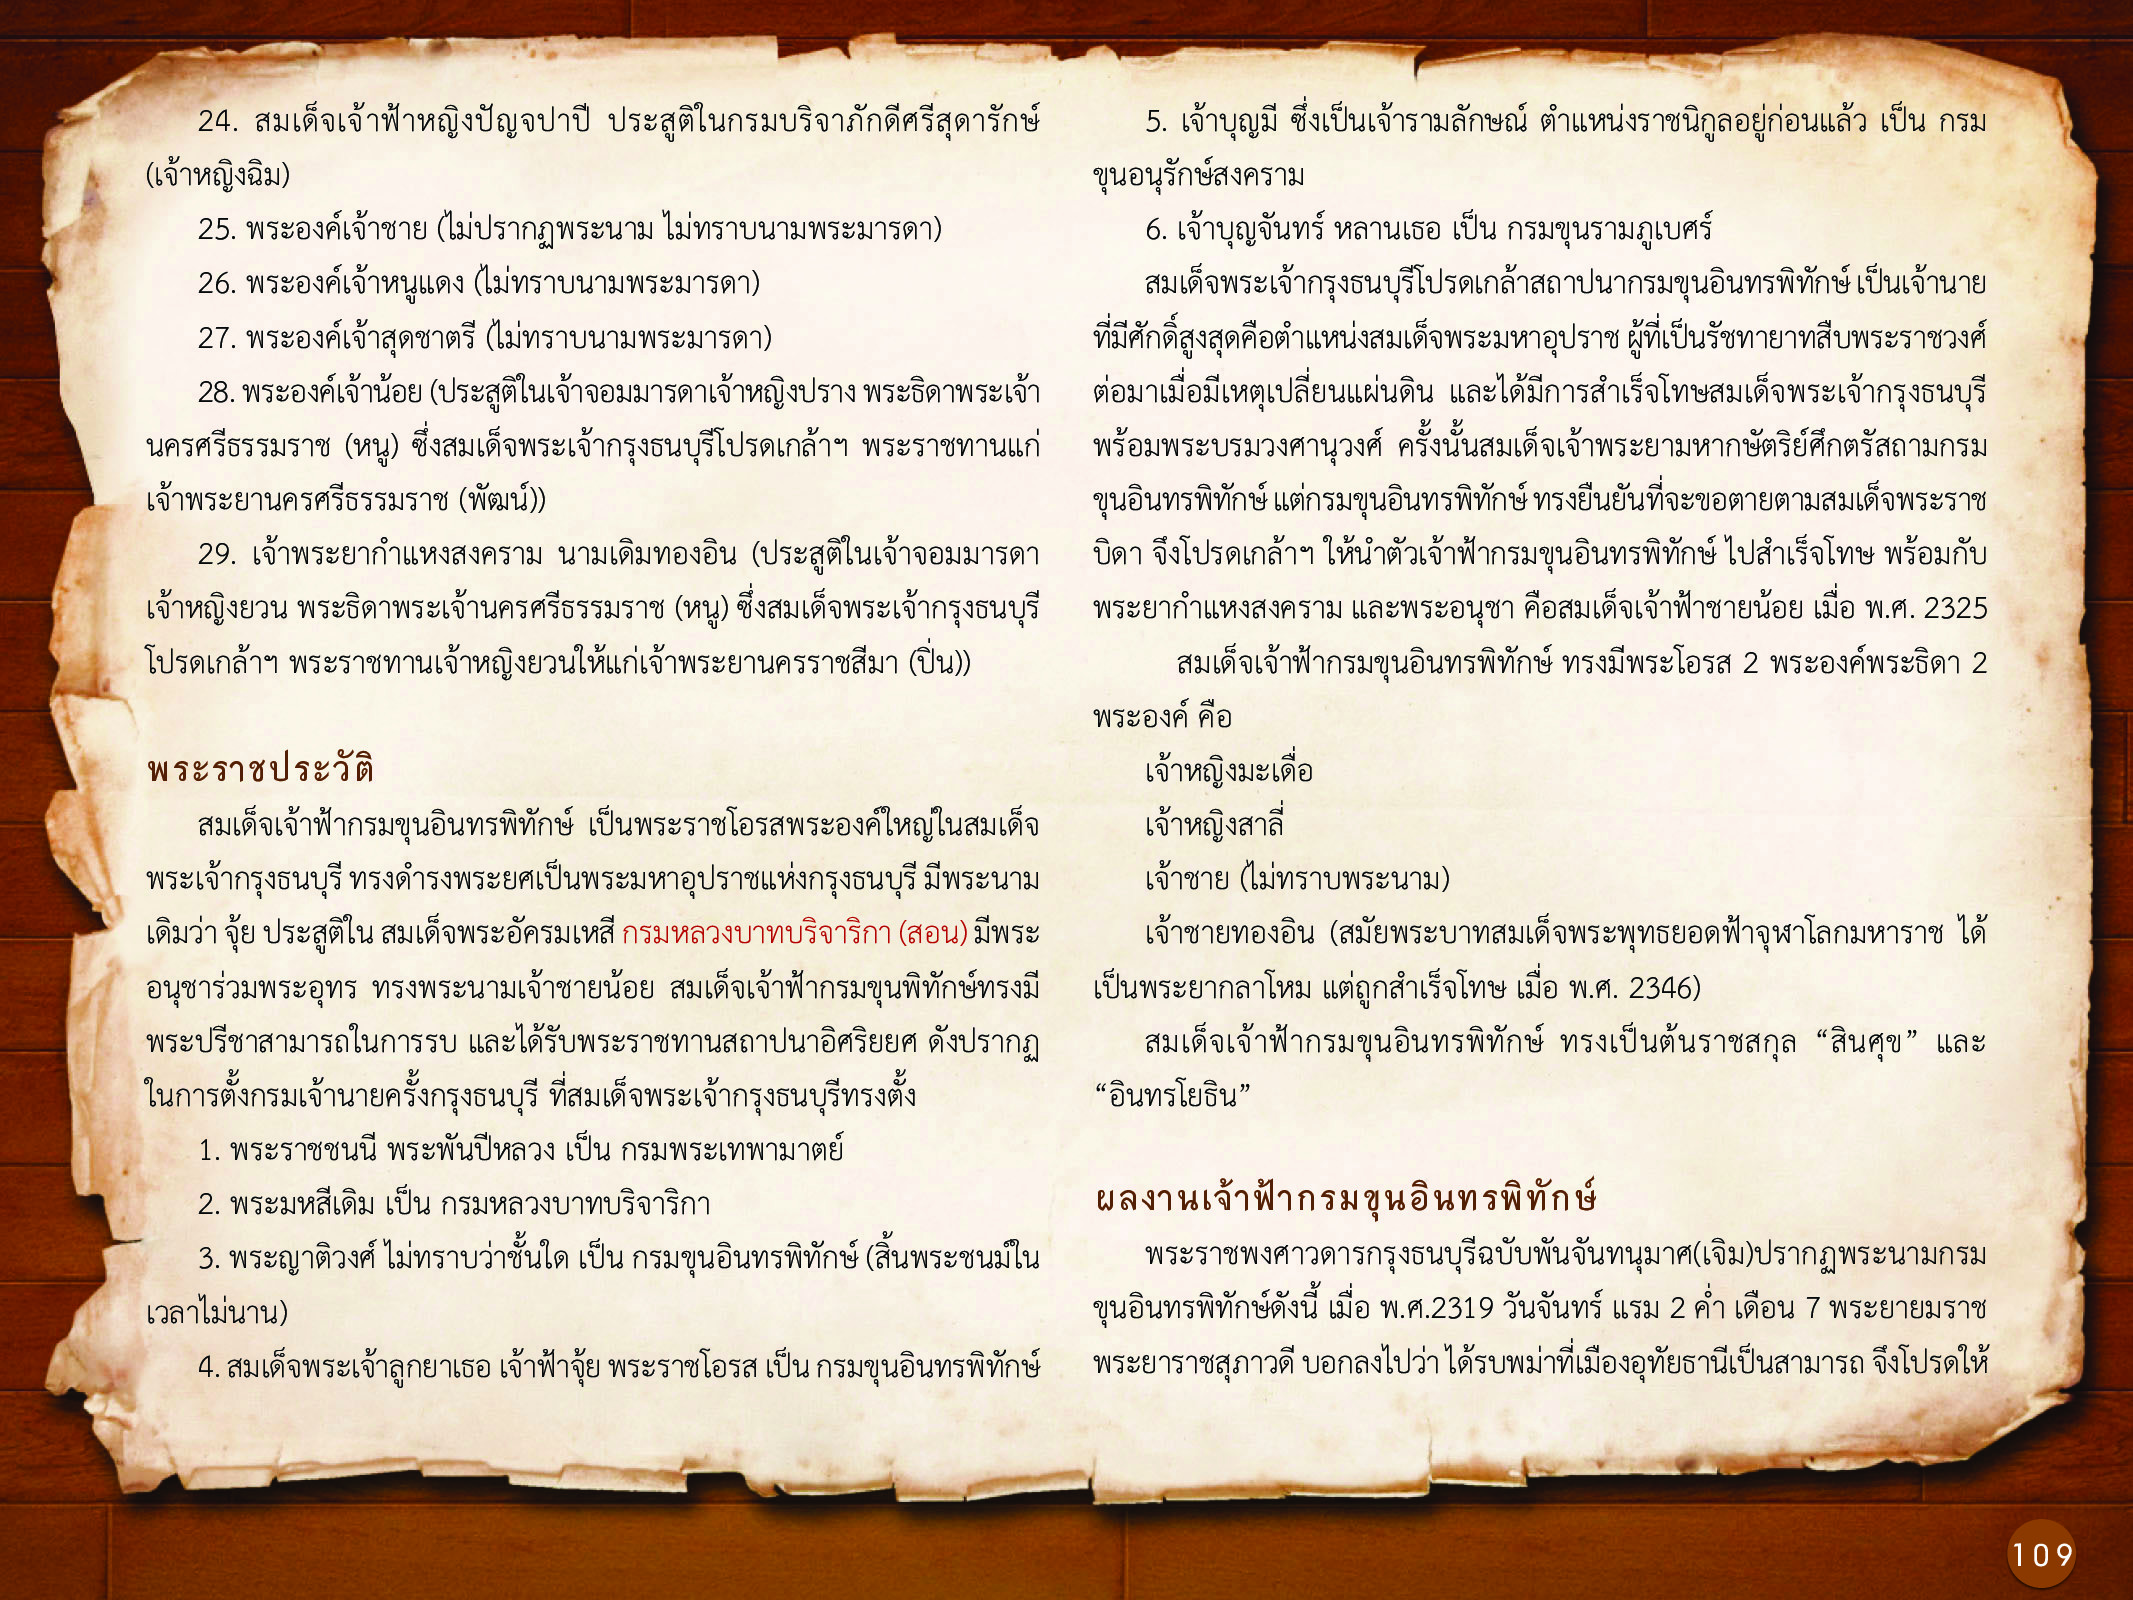 ประวัติศาสตร์กรุงธนบุรี ./images/history_dhonburi/109.jpg